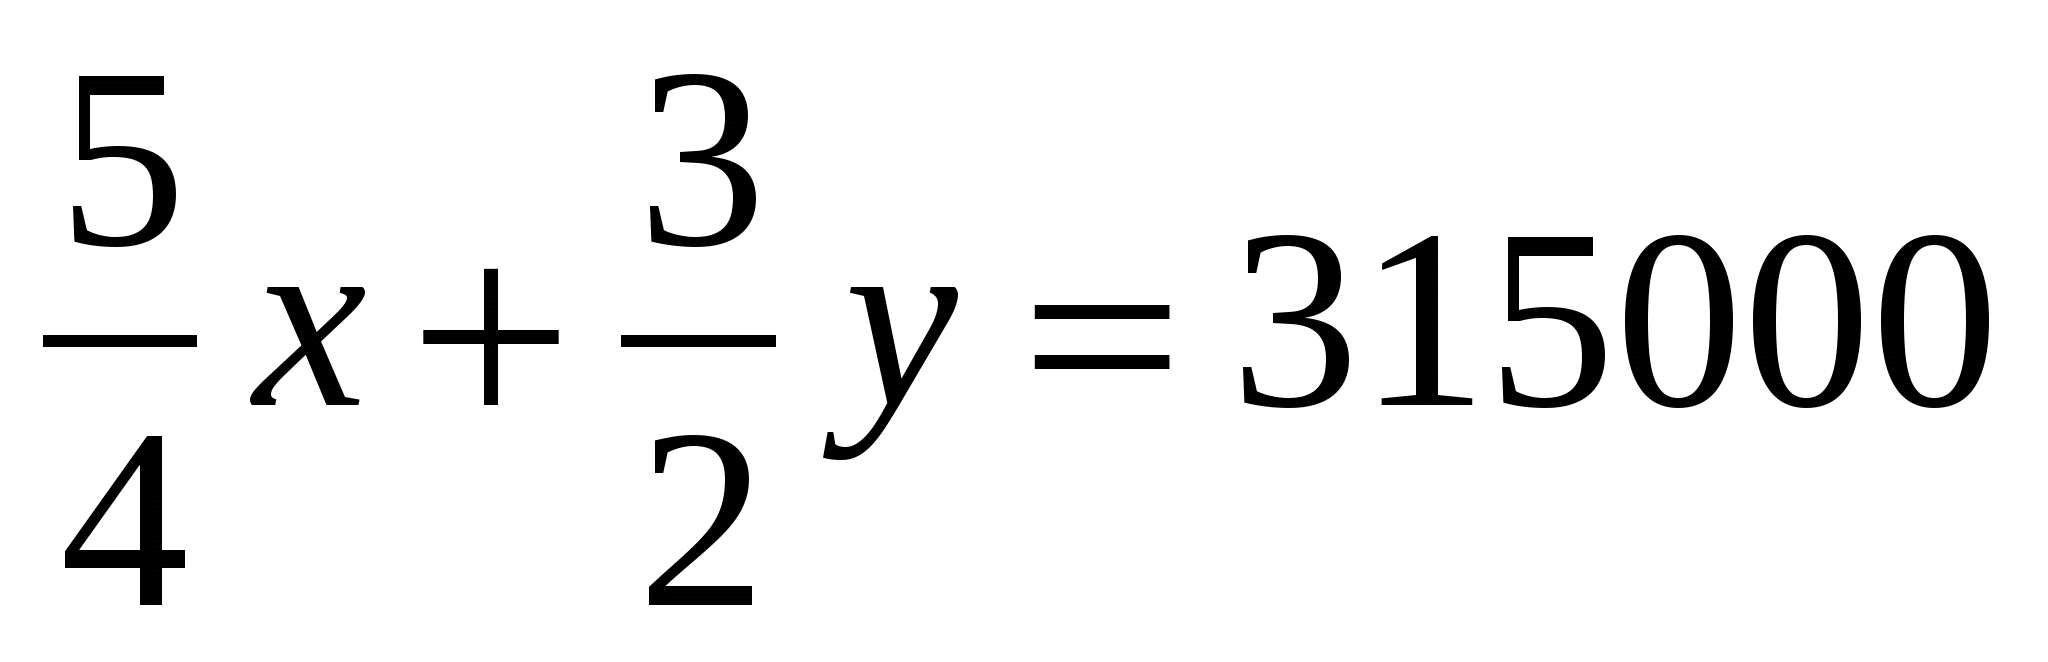 Математика на казахском языке с решениями Мәтіндік есептерді теңдеу құру арқылы шығару